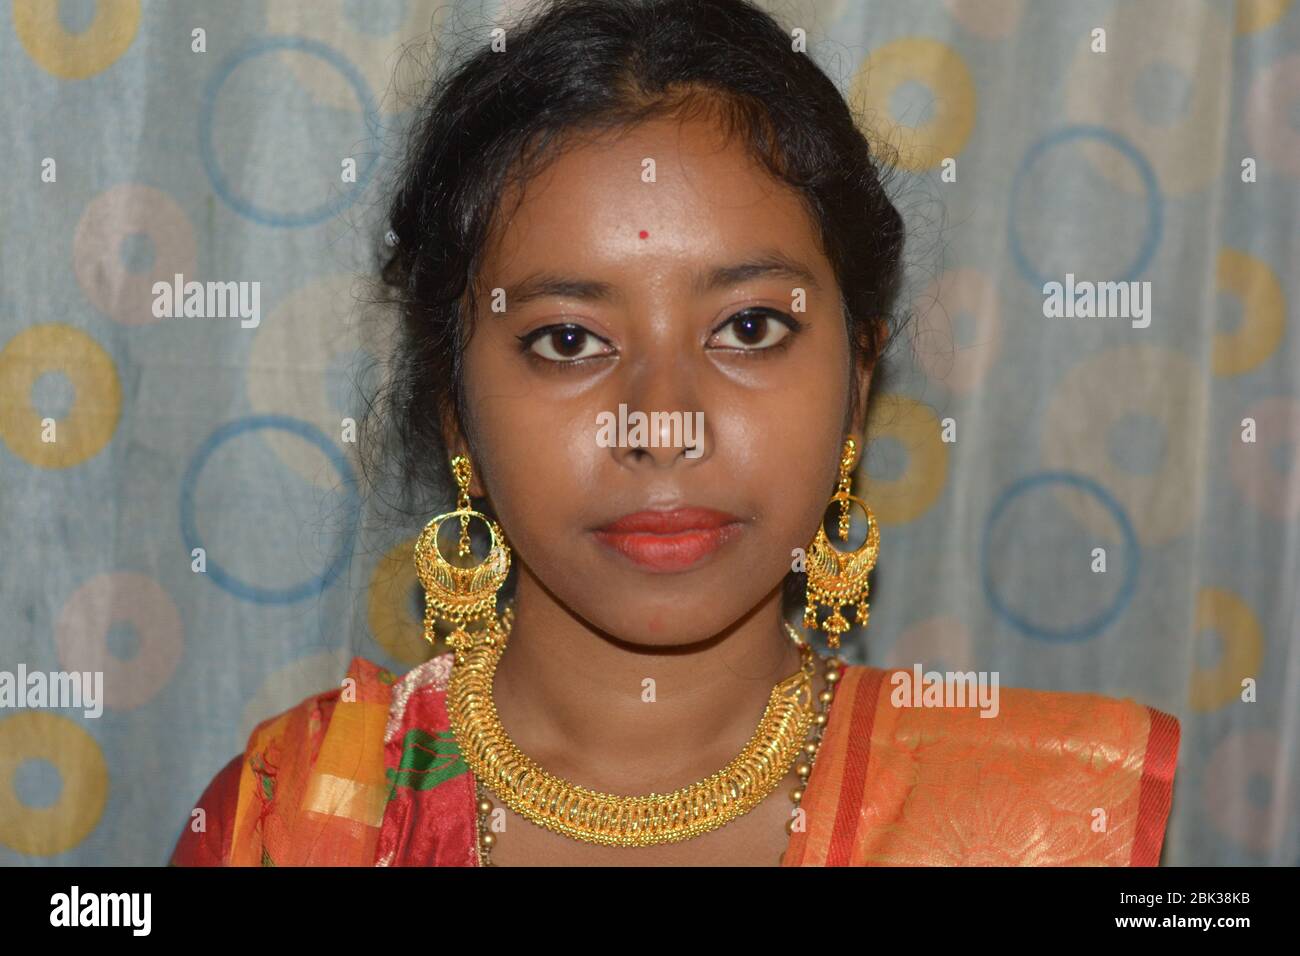 Nahaufnahme eines schönen indischen Mädchen trägt traditionelle große goldene Ohrringe und Halskette, selektive Fokussierung. Stockfoto